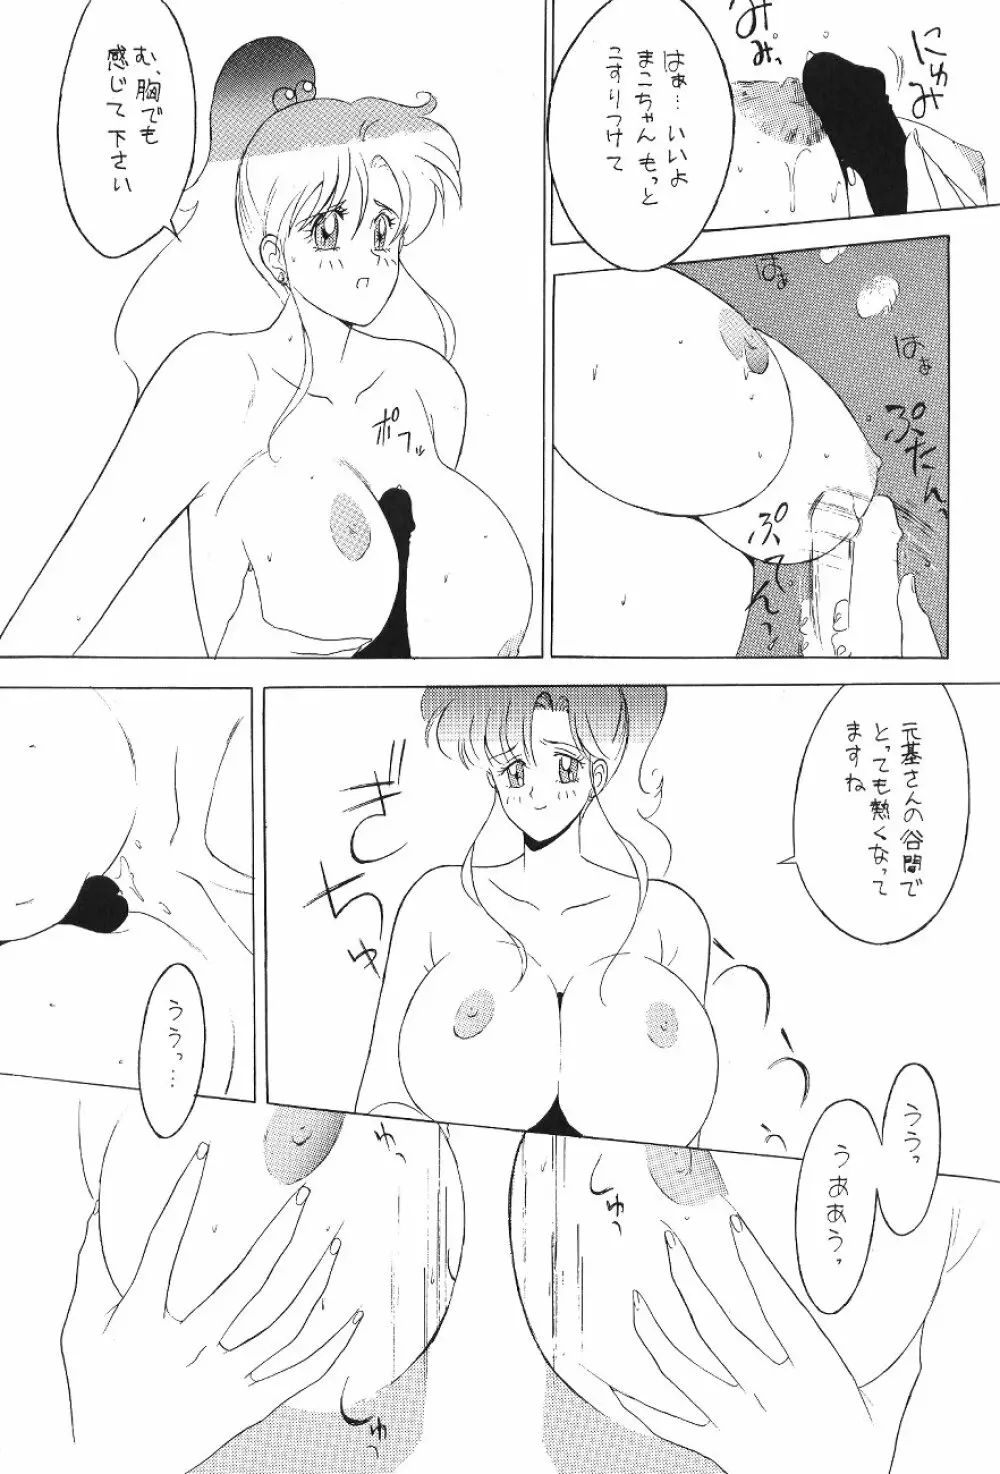 KATZE 7 上巻 - page61